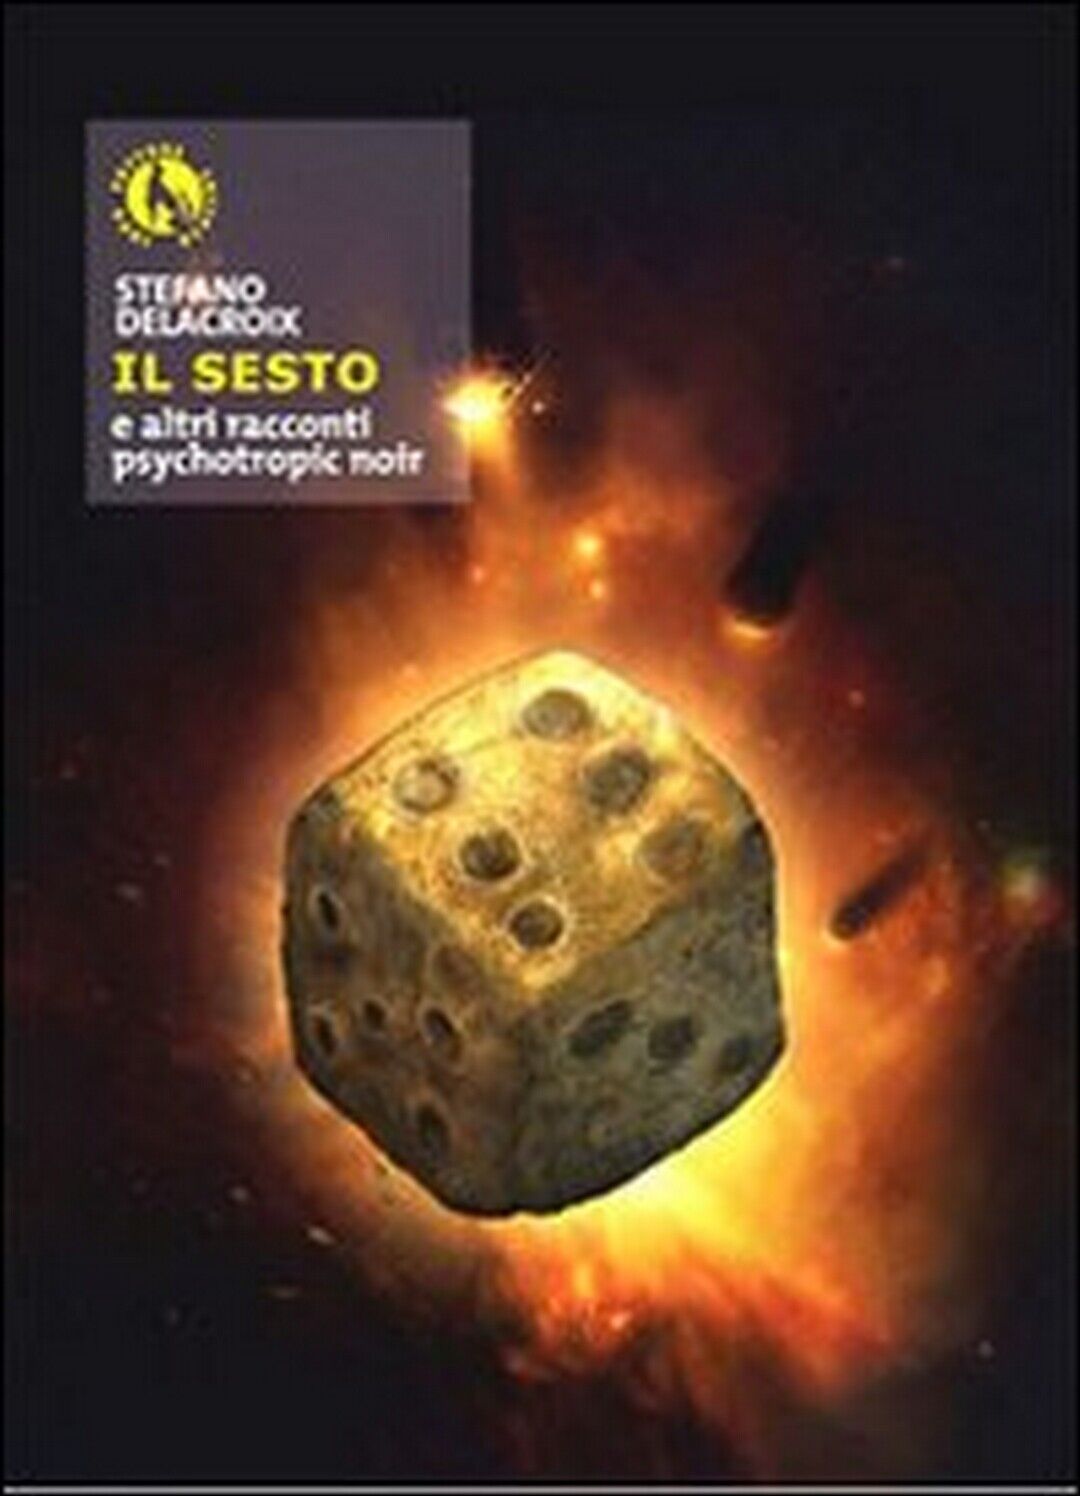 Il sesto e altri racconti psychotropic noir  di Stefano Delacroix, M. Zizzi libro usato